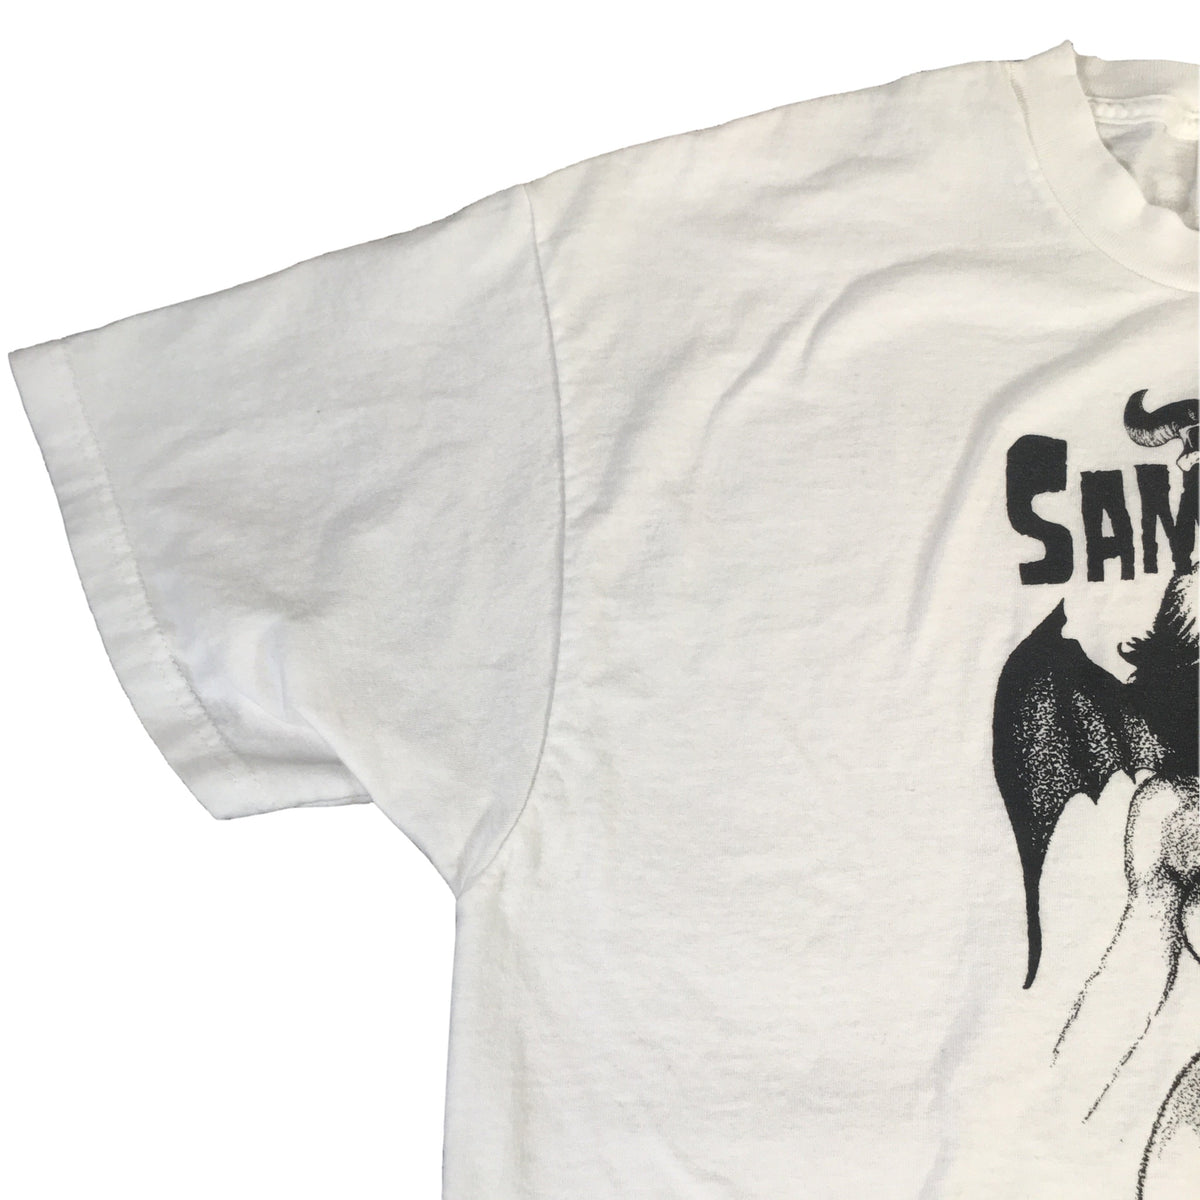 Vintage Samhain &quot;Unholy Passion&quot; T-Shirt - jointcustodydc